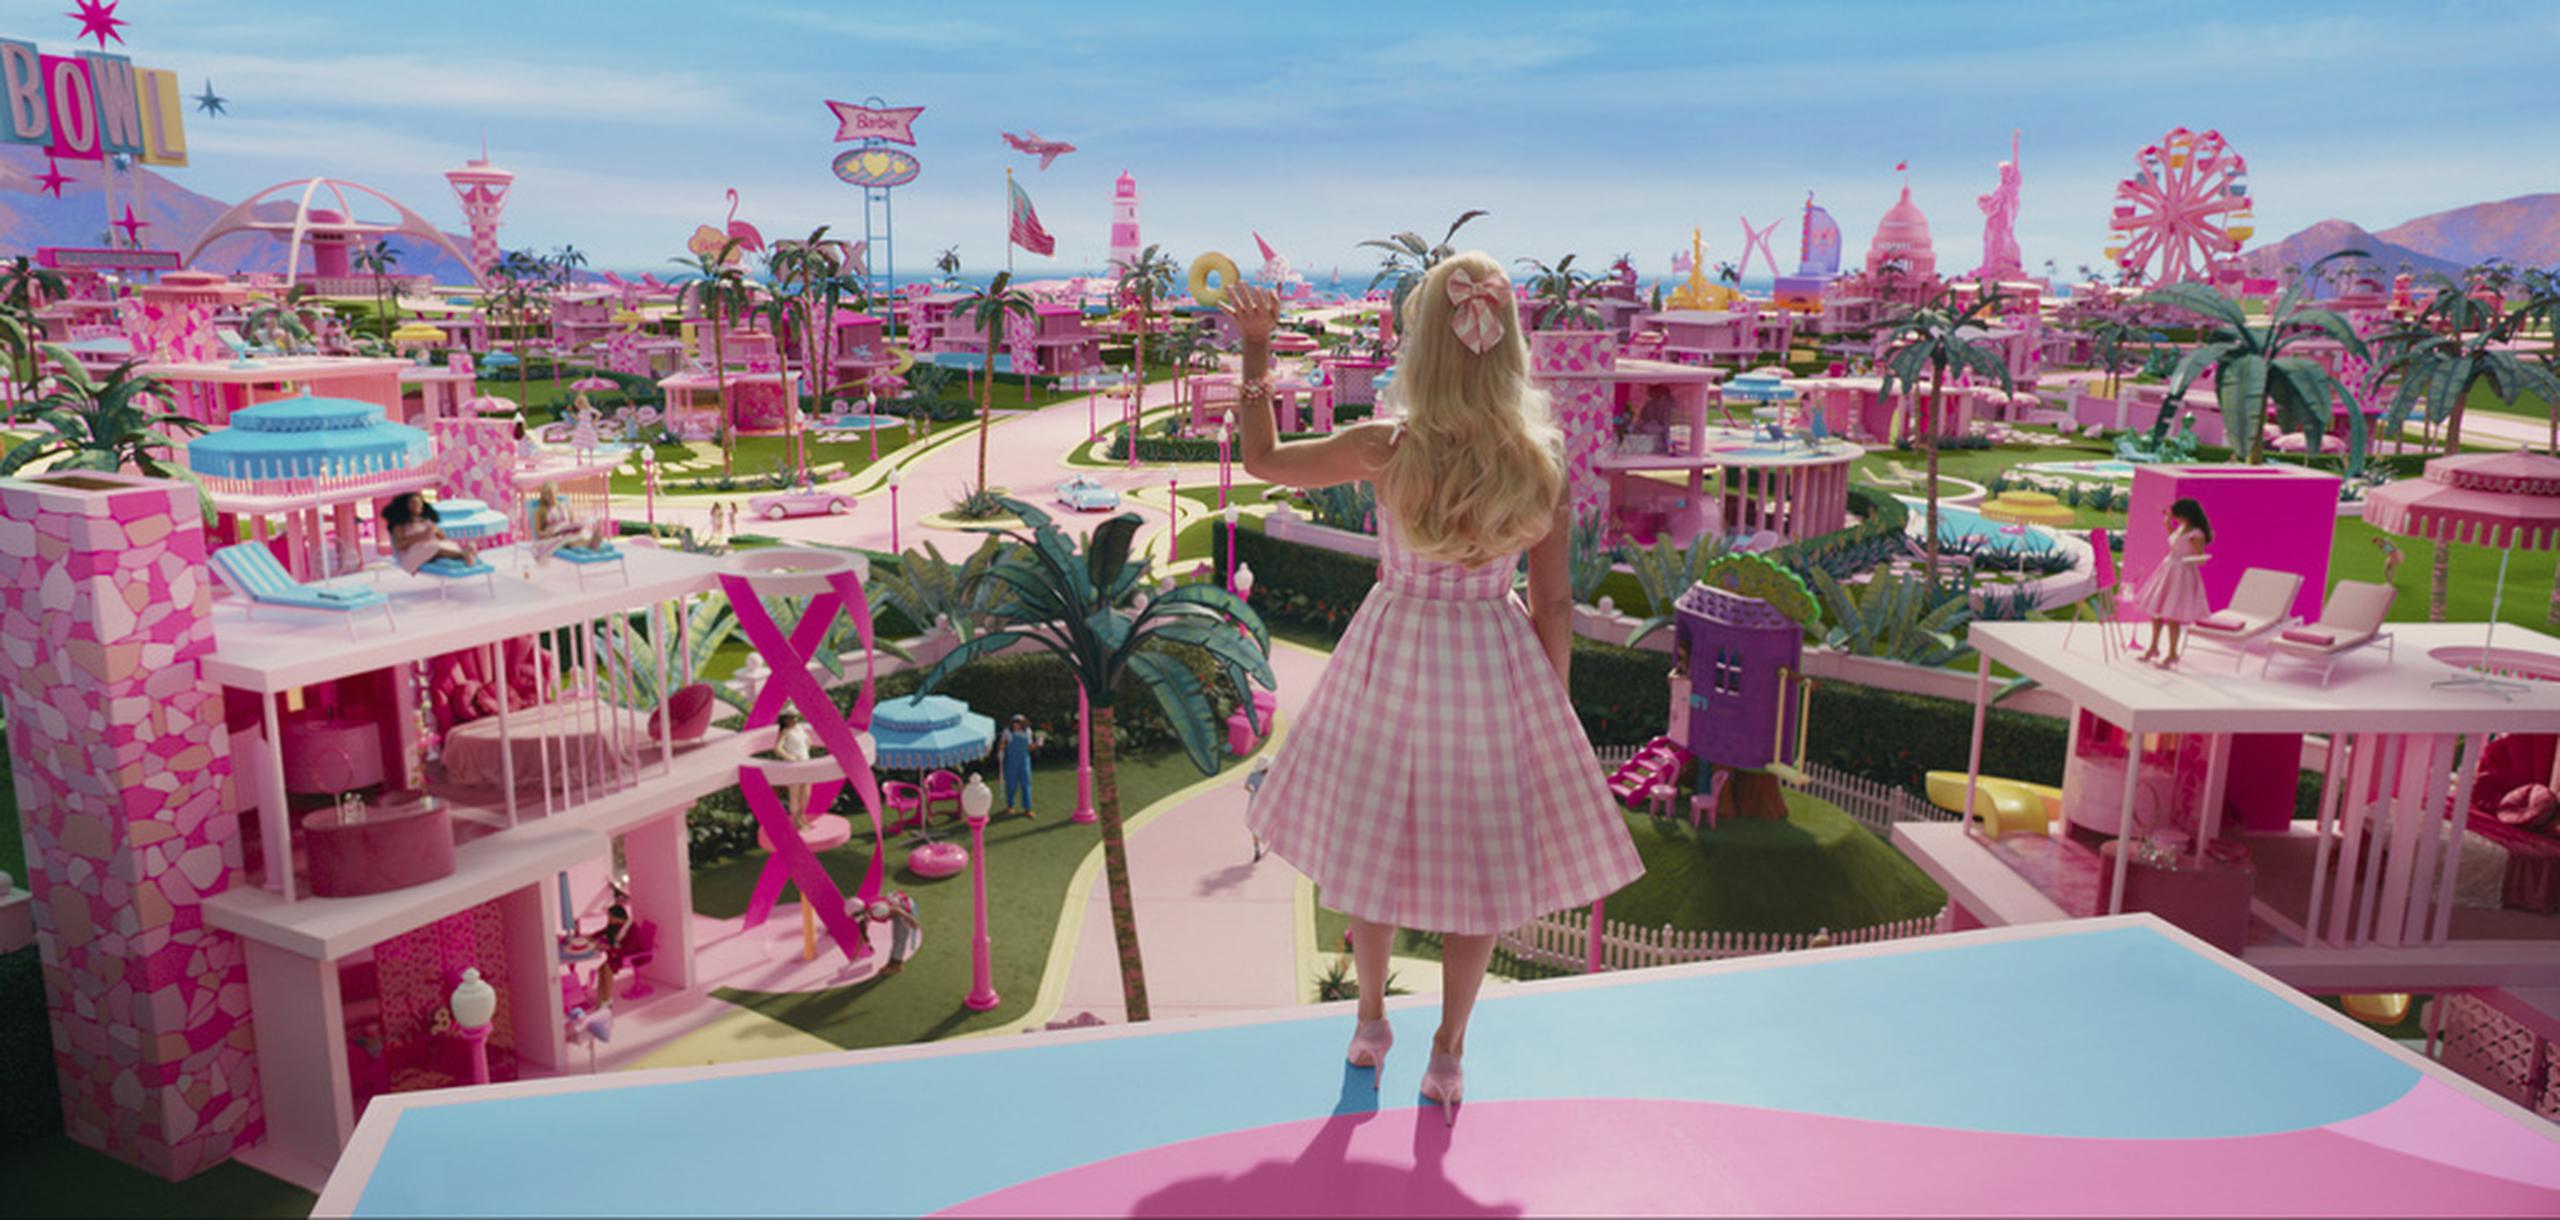 Margot Robbie en una escena de "Barbie".